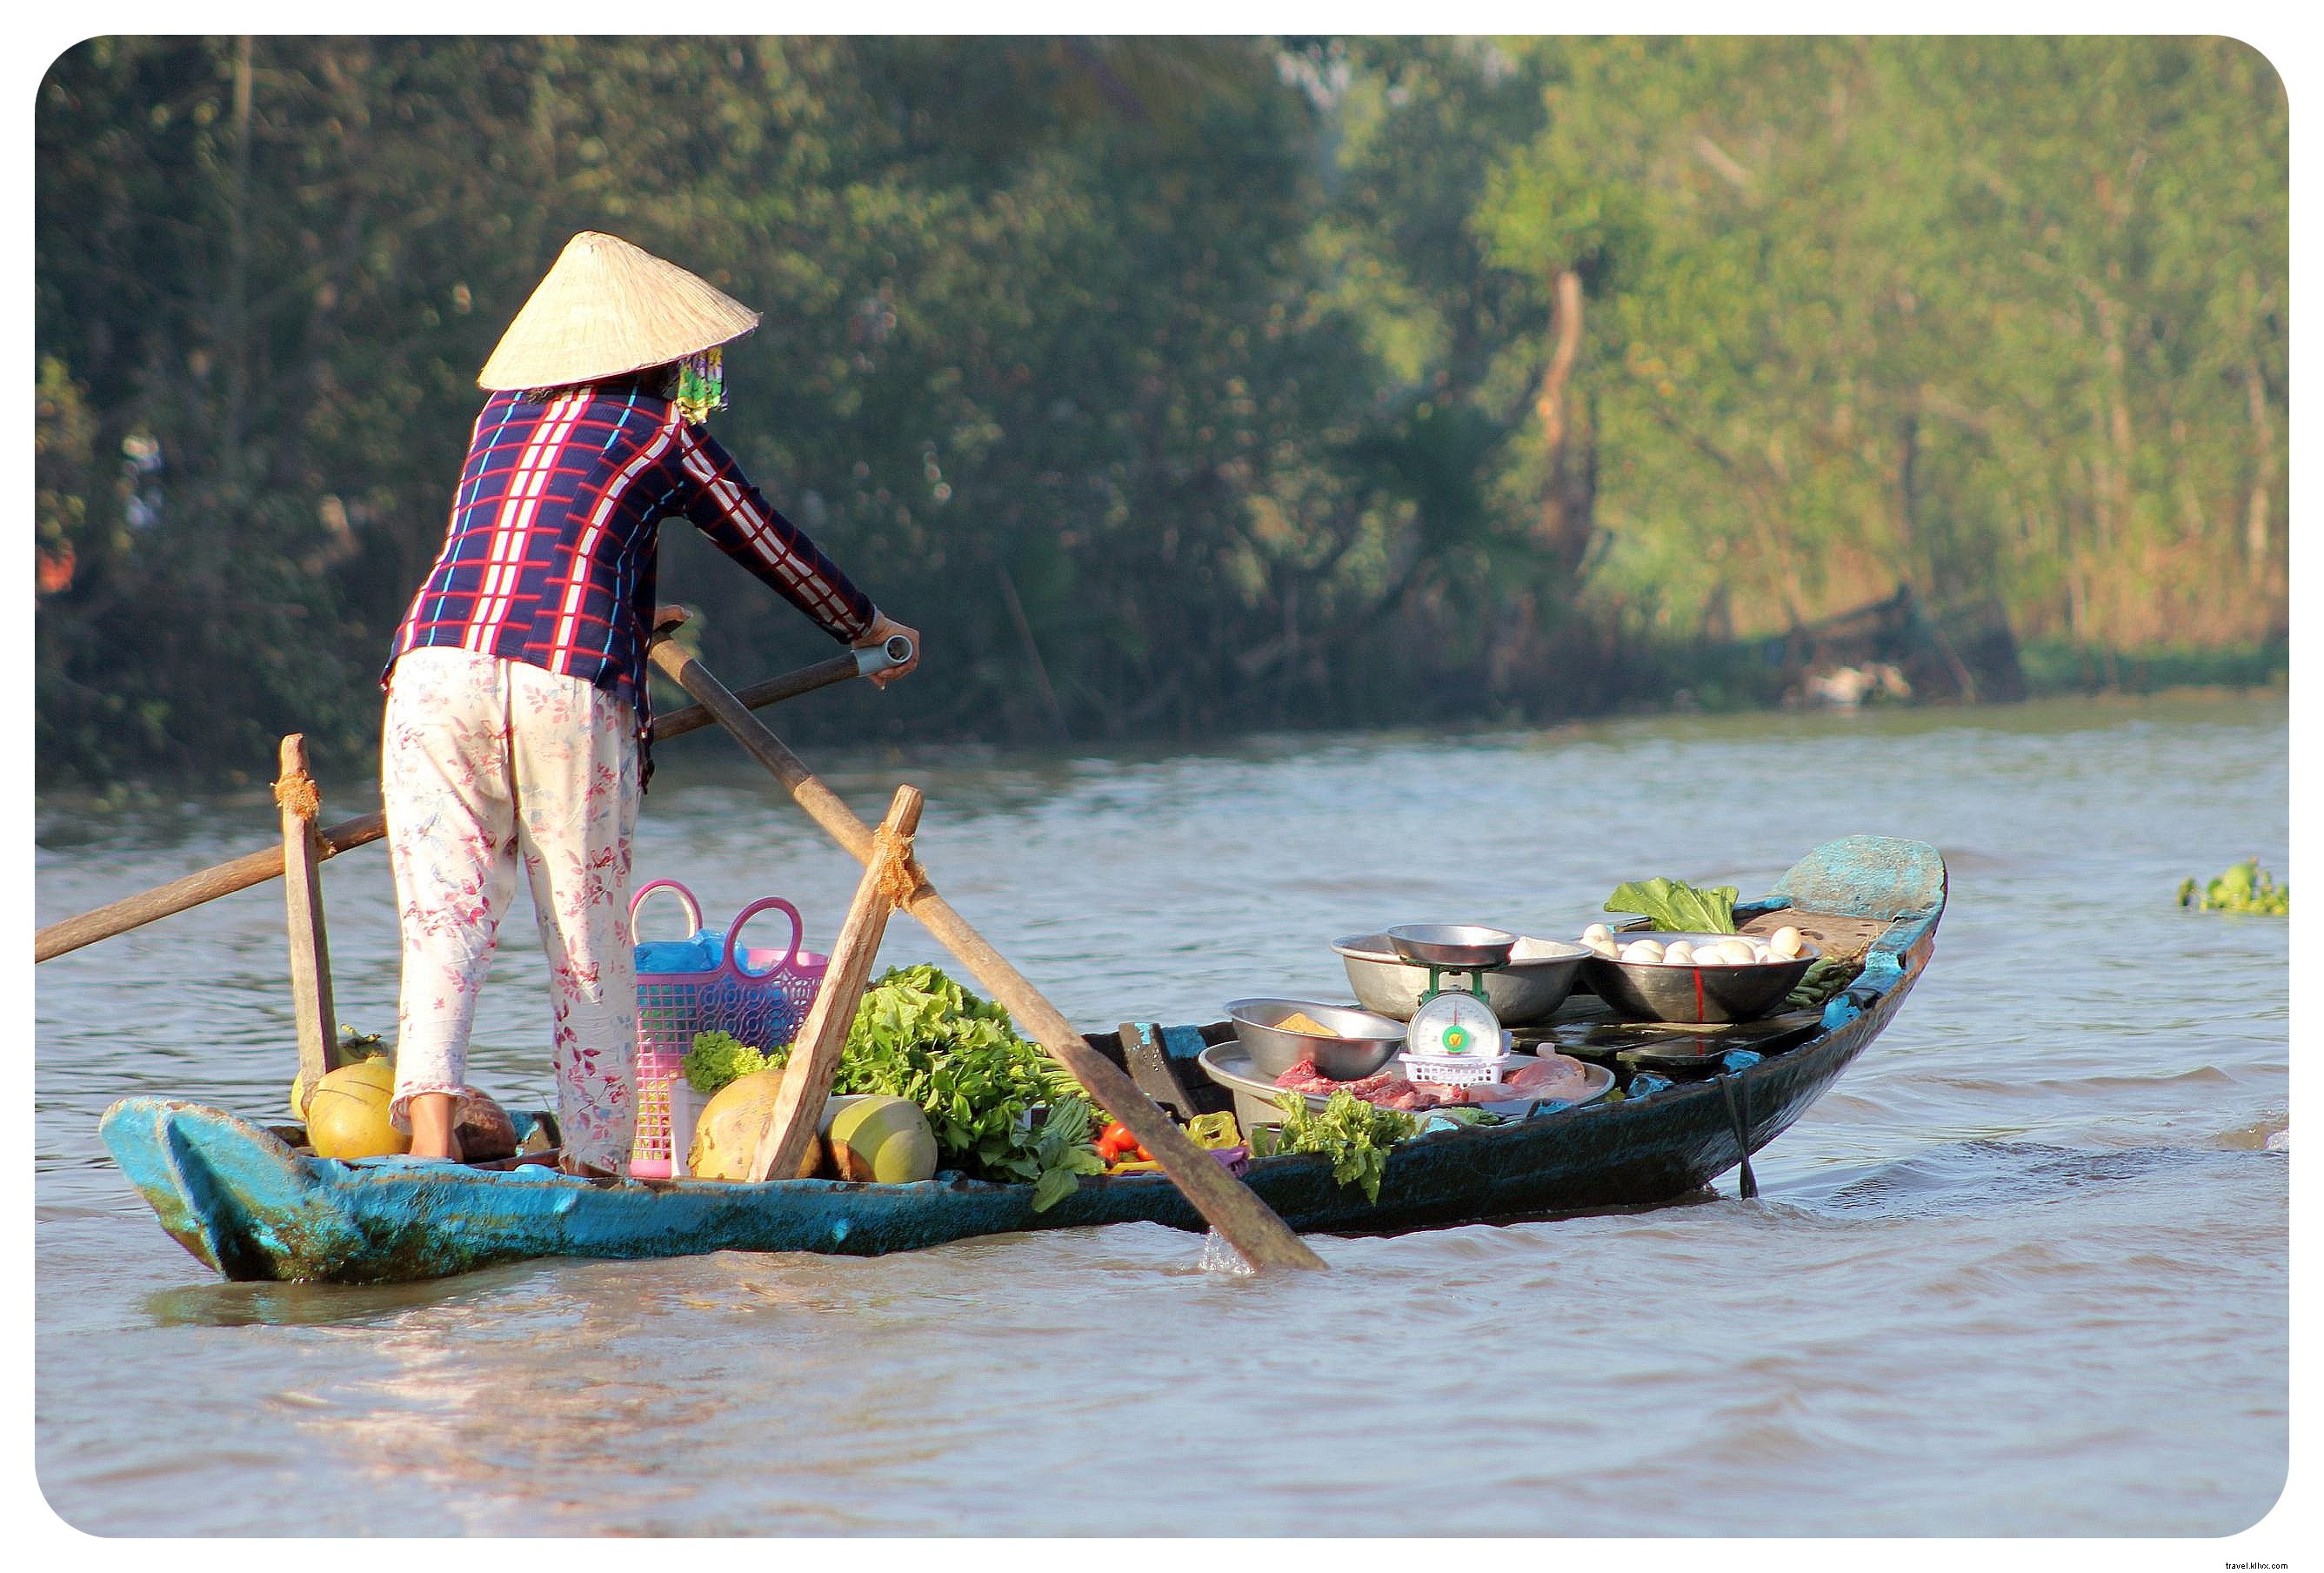 Delta del Mekong de Vietnam:mercados flotantes y vida en el río